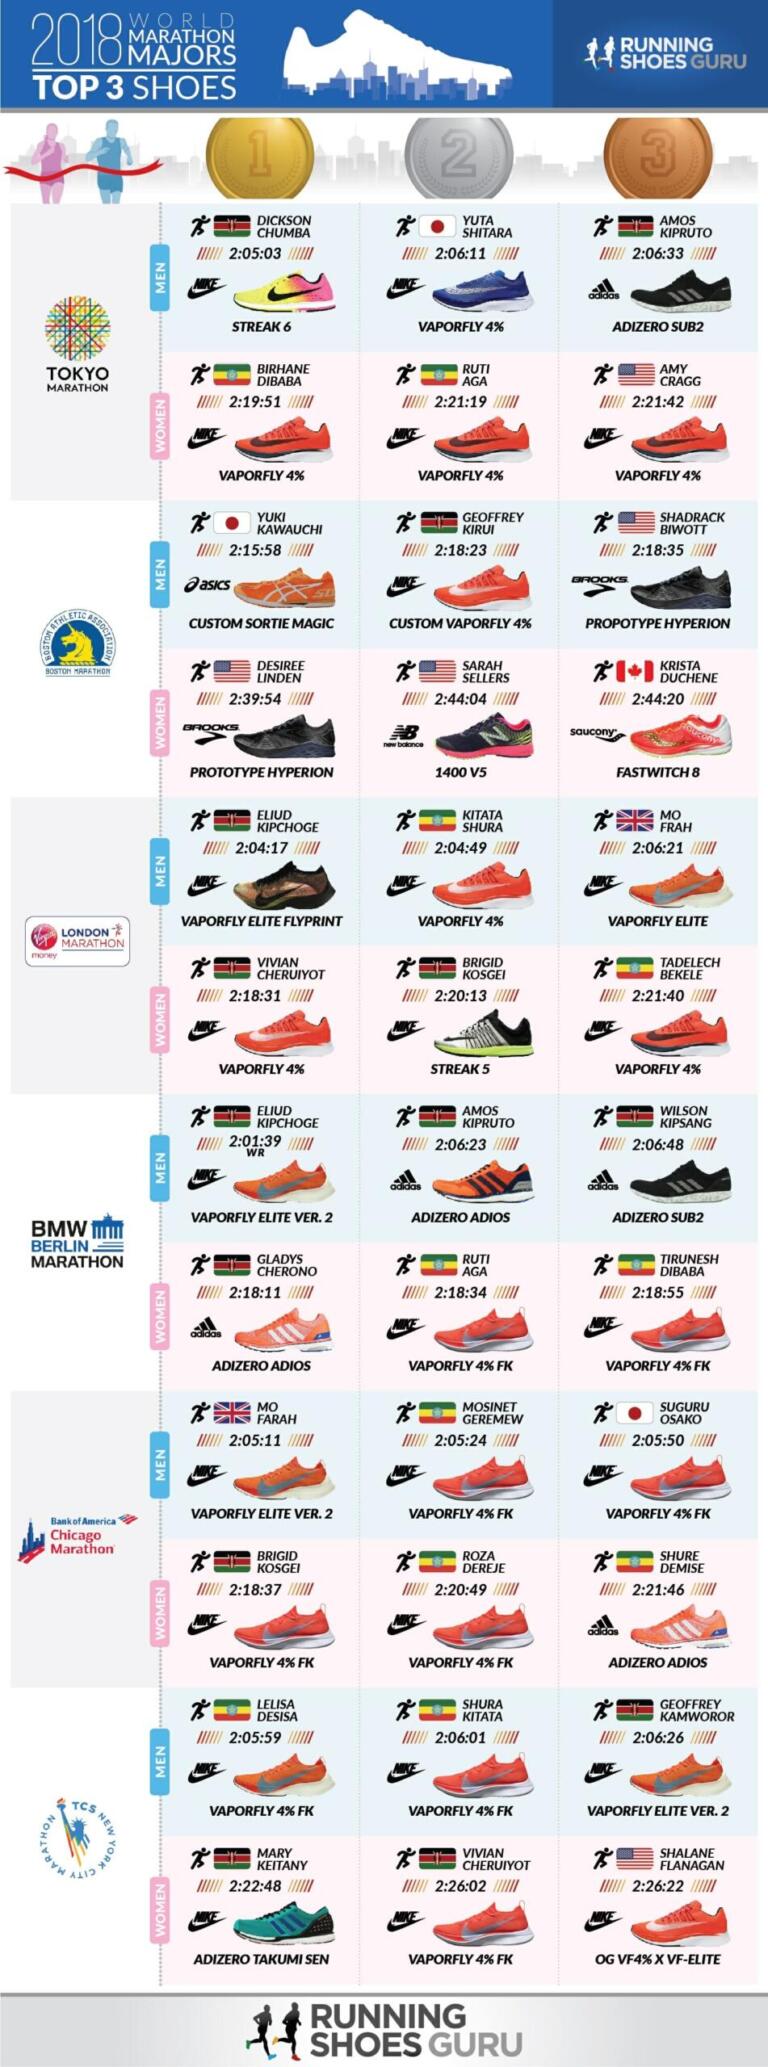 [Infographic] Tổng hợp giày chạy của các nhà vô địch 2018 World Marathon Majors